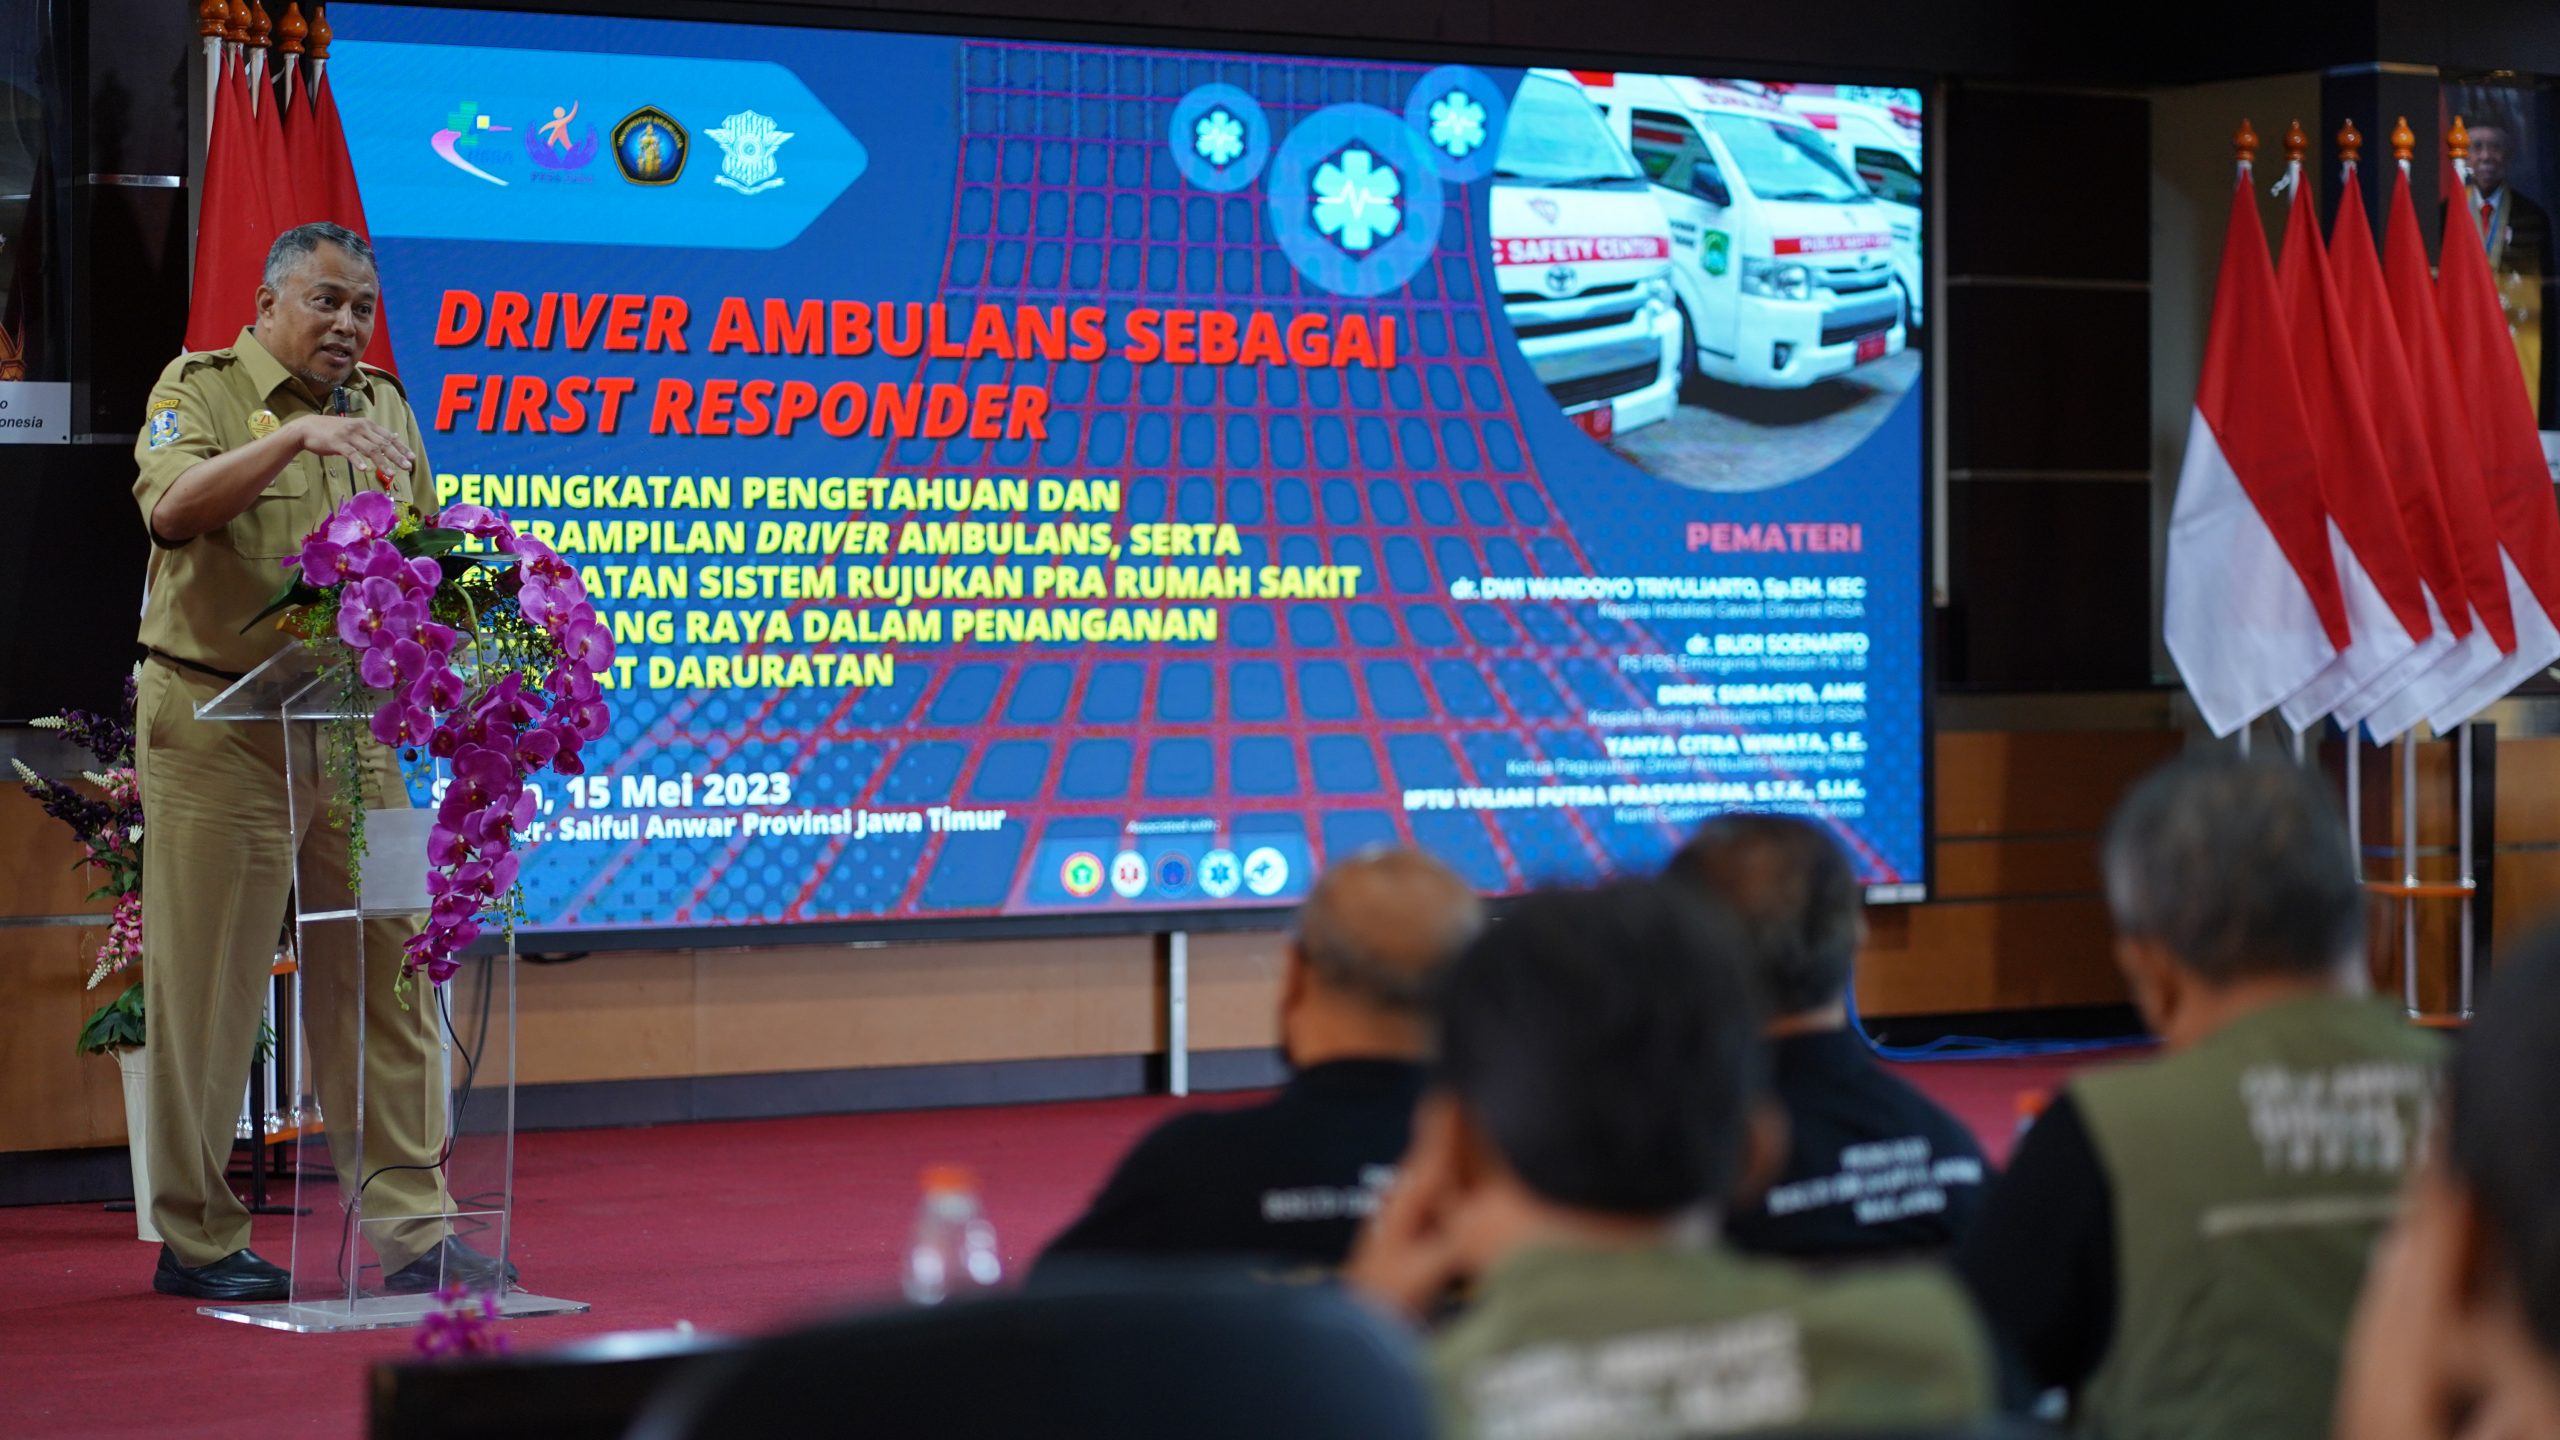 Pelatihan Driver Ambulans sebagai First Responder